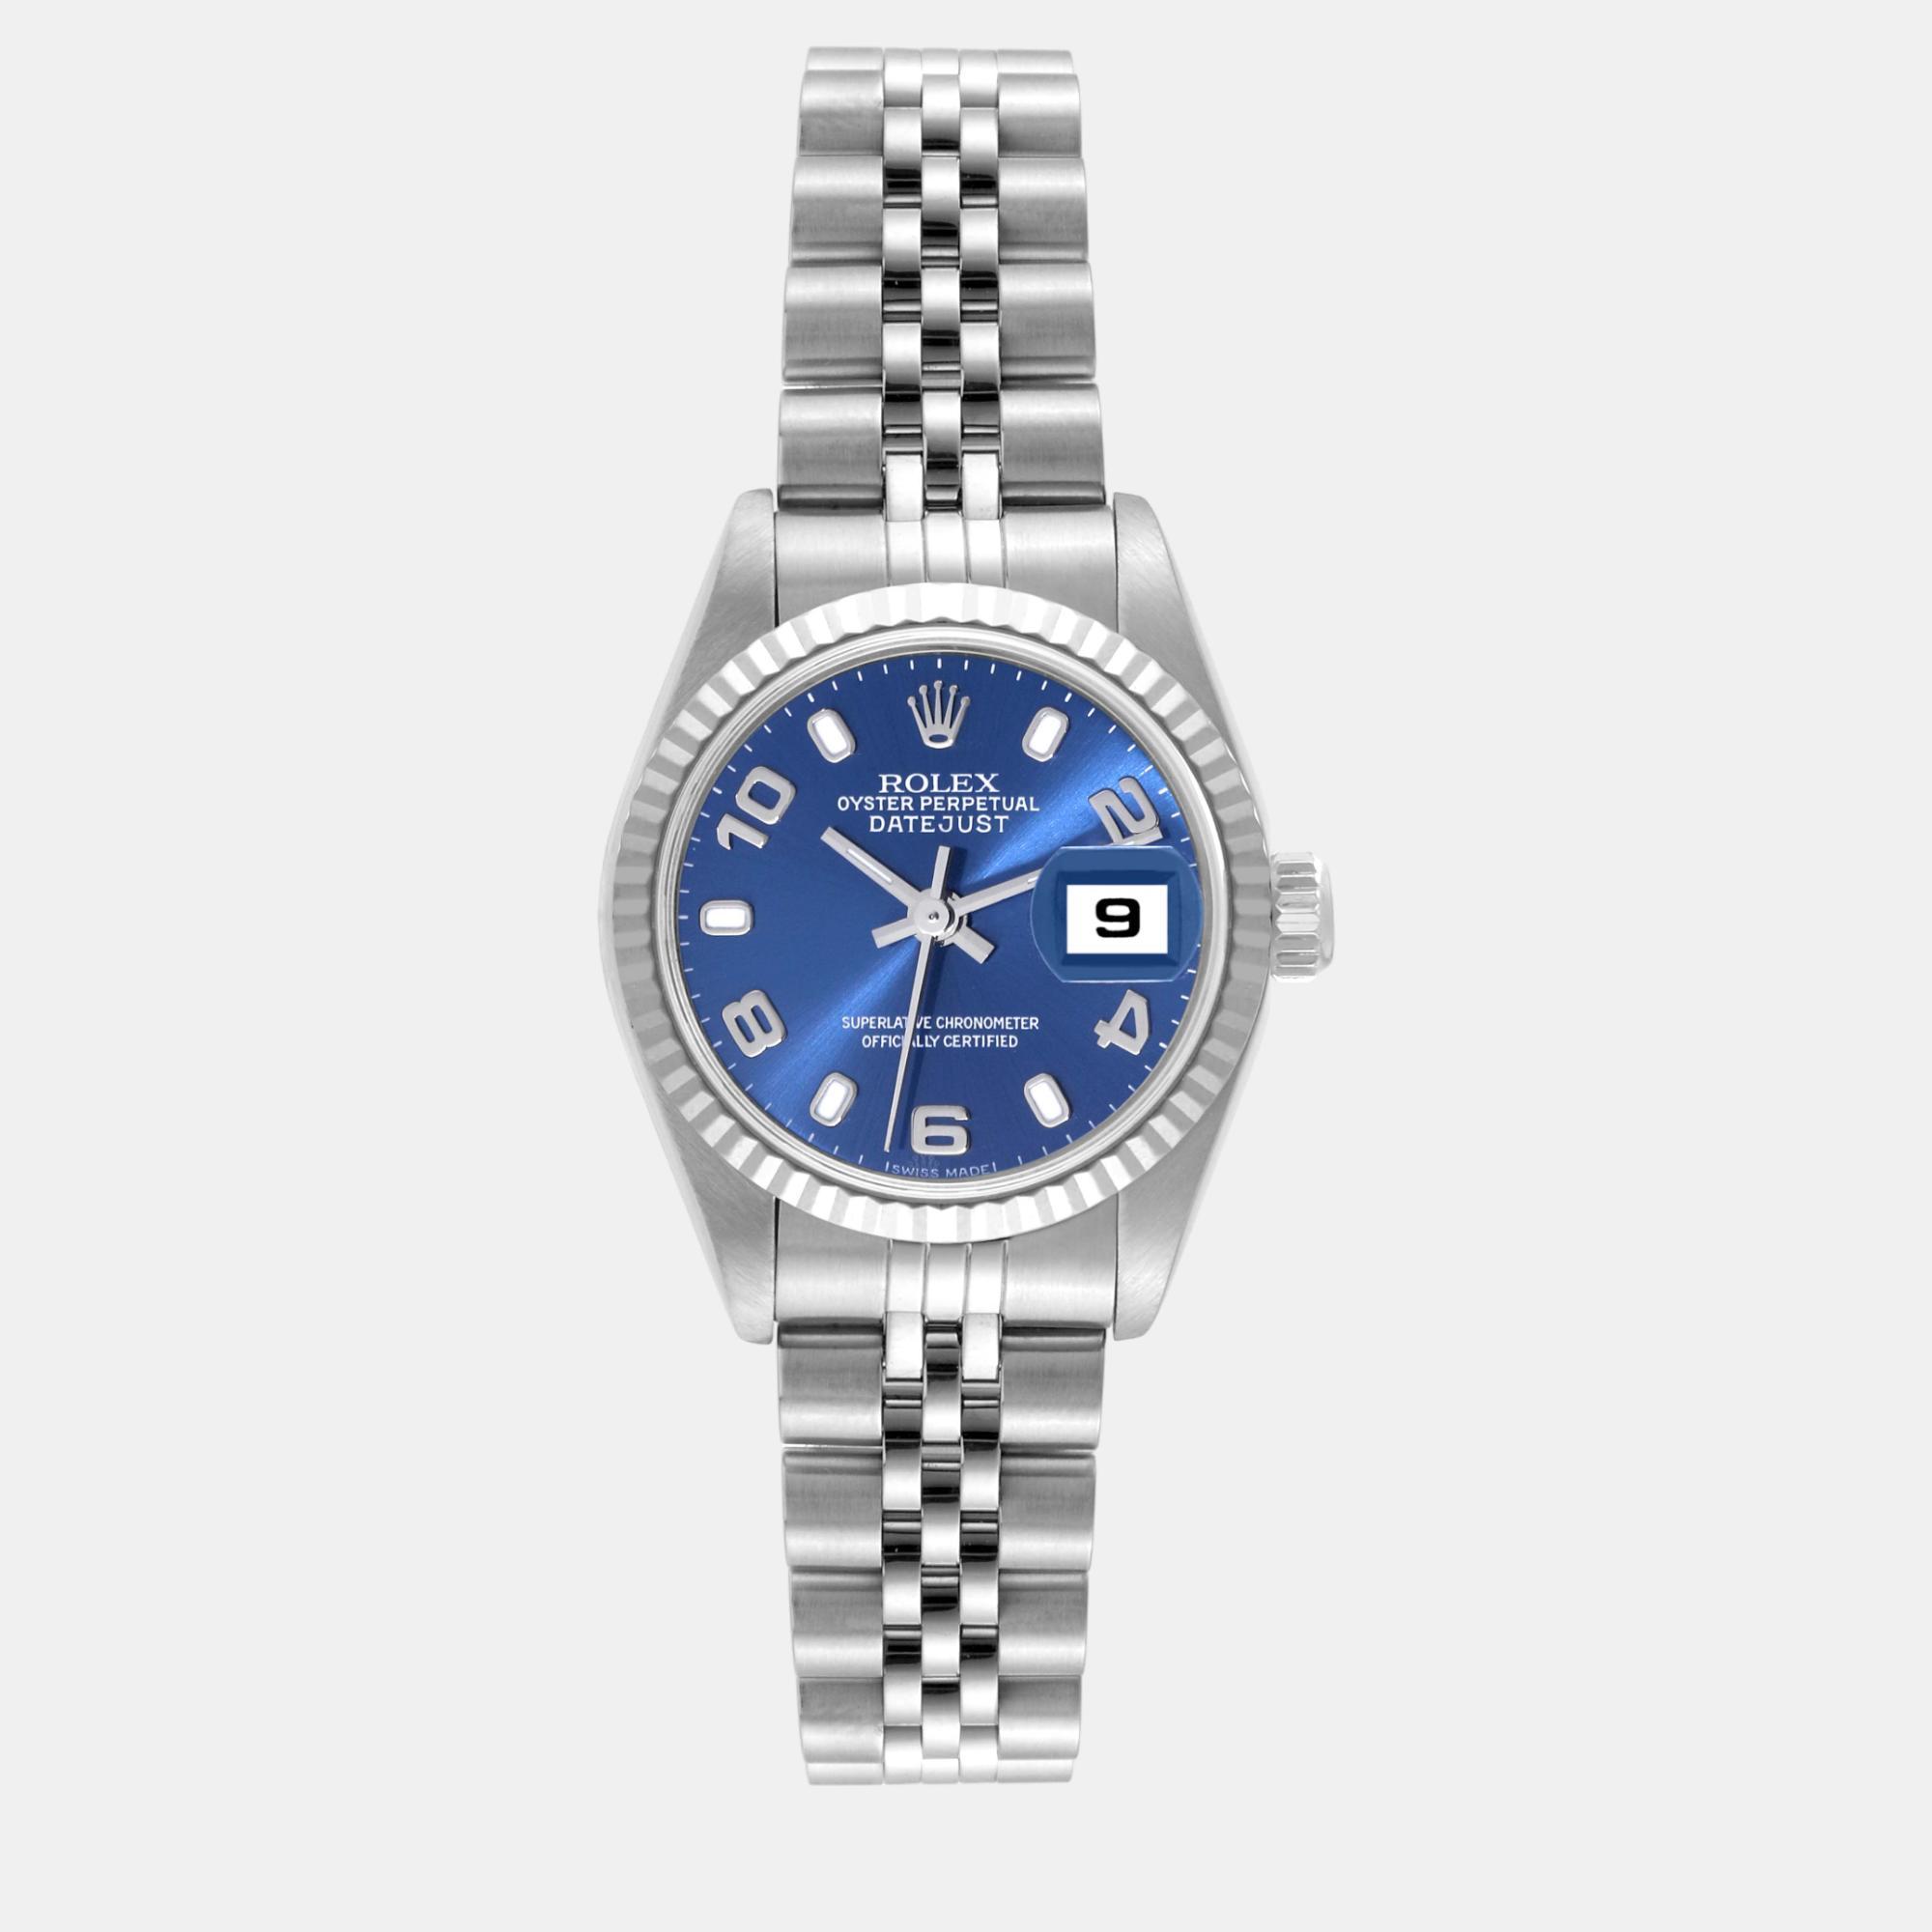 Rolex datejust steel white gold blue dial ladies watch 26.0 mm